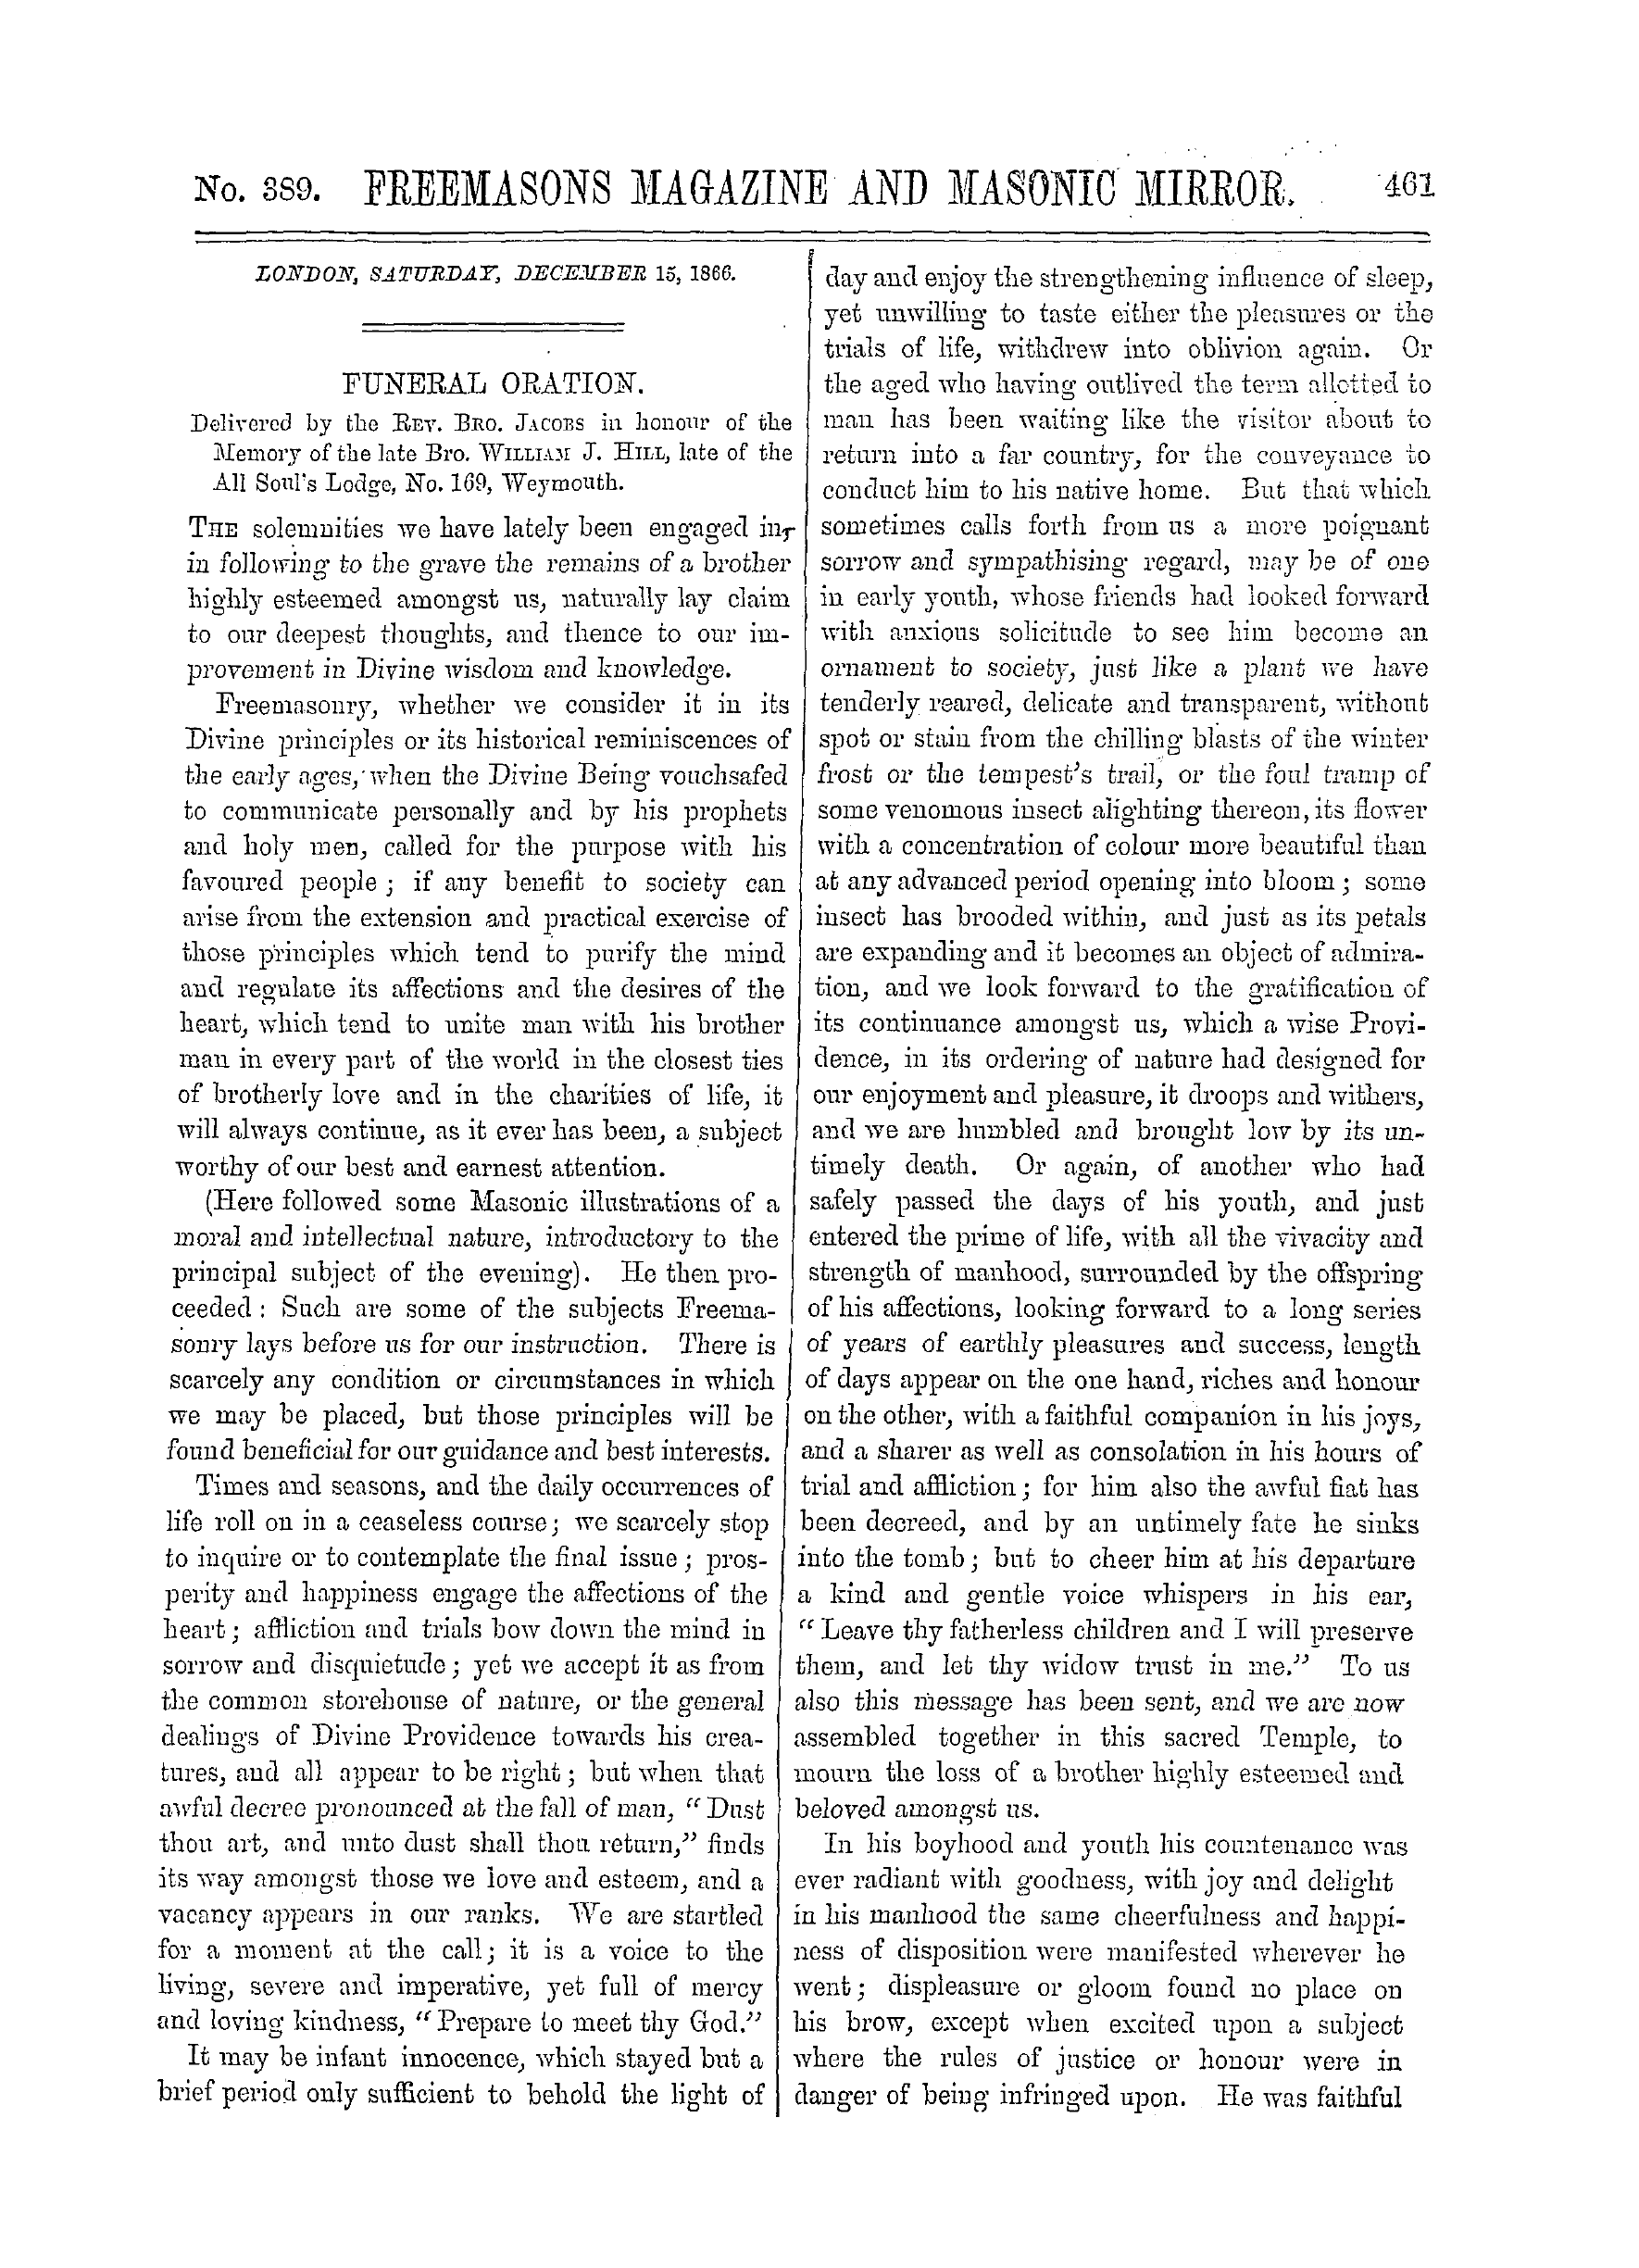 The Freemasons' Monthly Magazine: 1866-12-15: 1